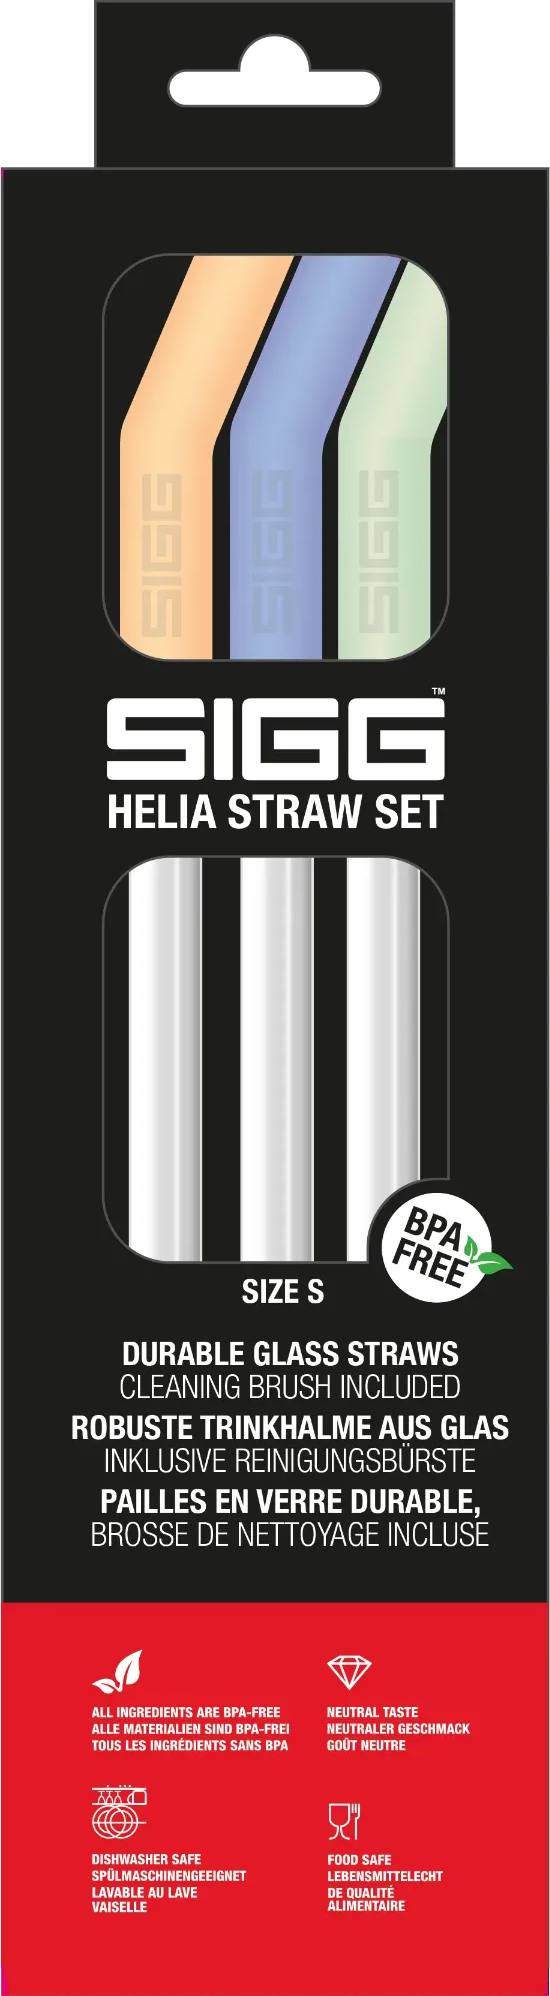 Sigg Helia Straw S Day